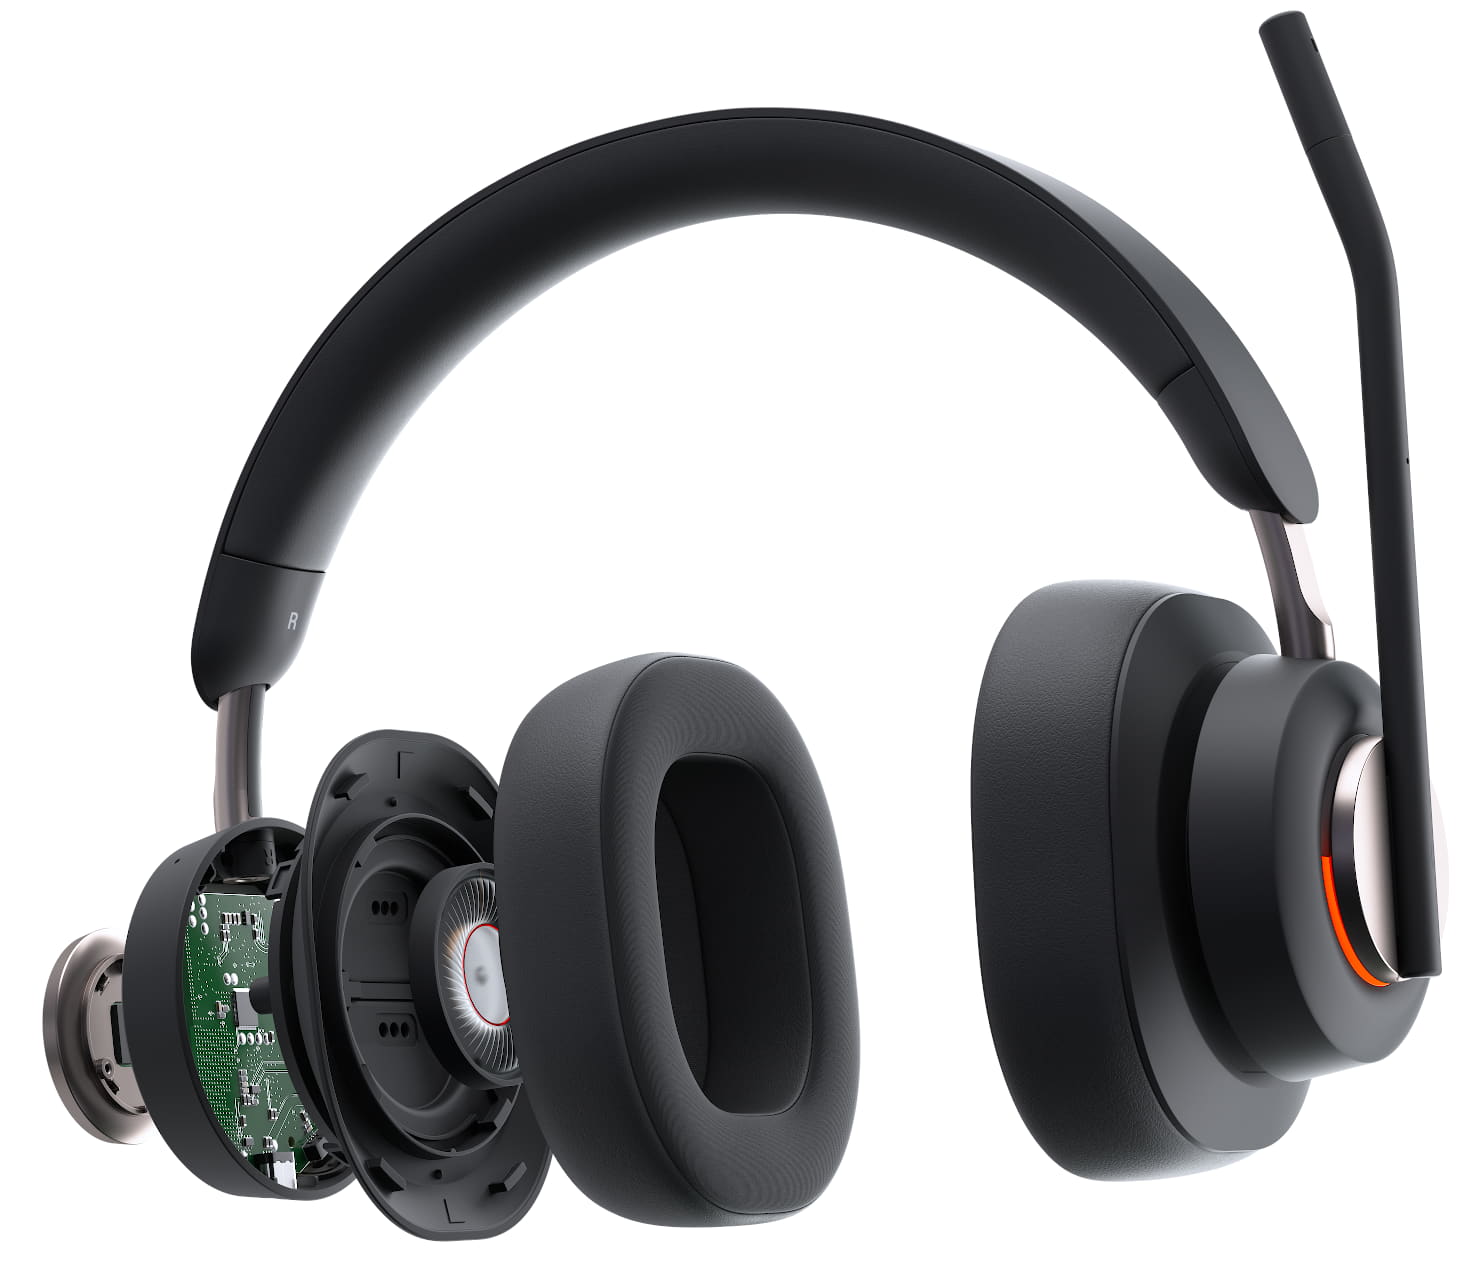 Närbild framifrån på Kensington H3000 Bluetooth Over-ear-headset med upptagetlampan tänd och mikrofonen i vänd för mute-position och höger öronkåpa expanderas för att visa tekniken